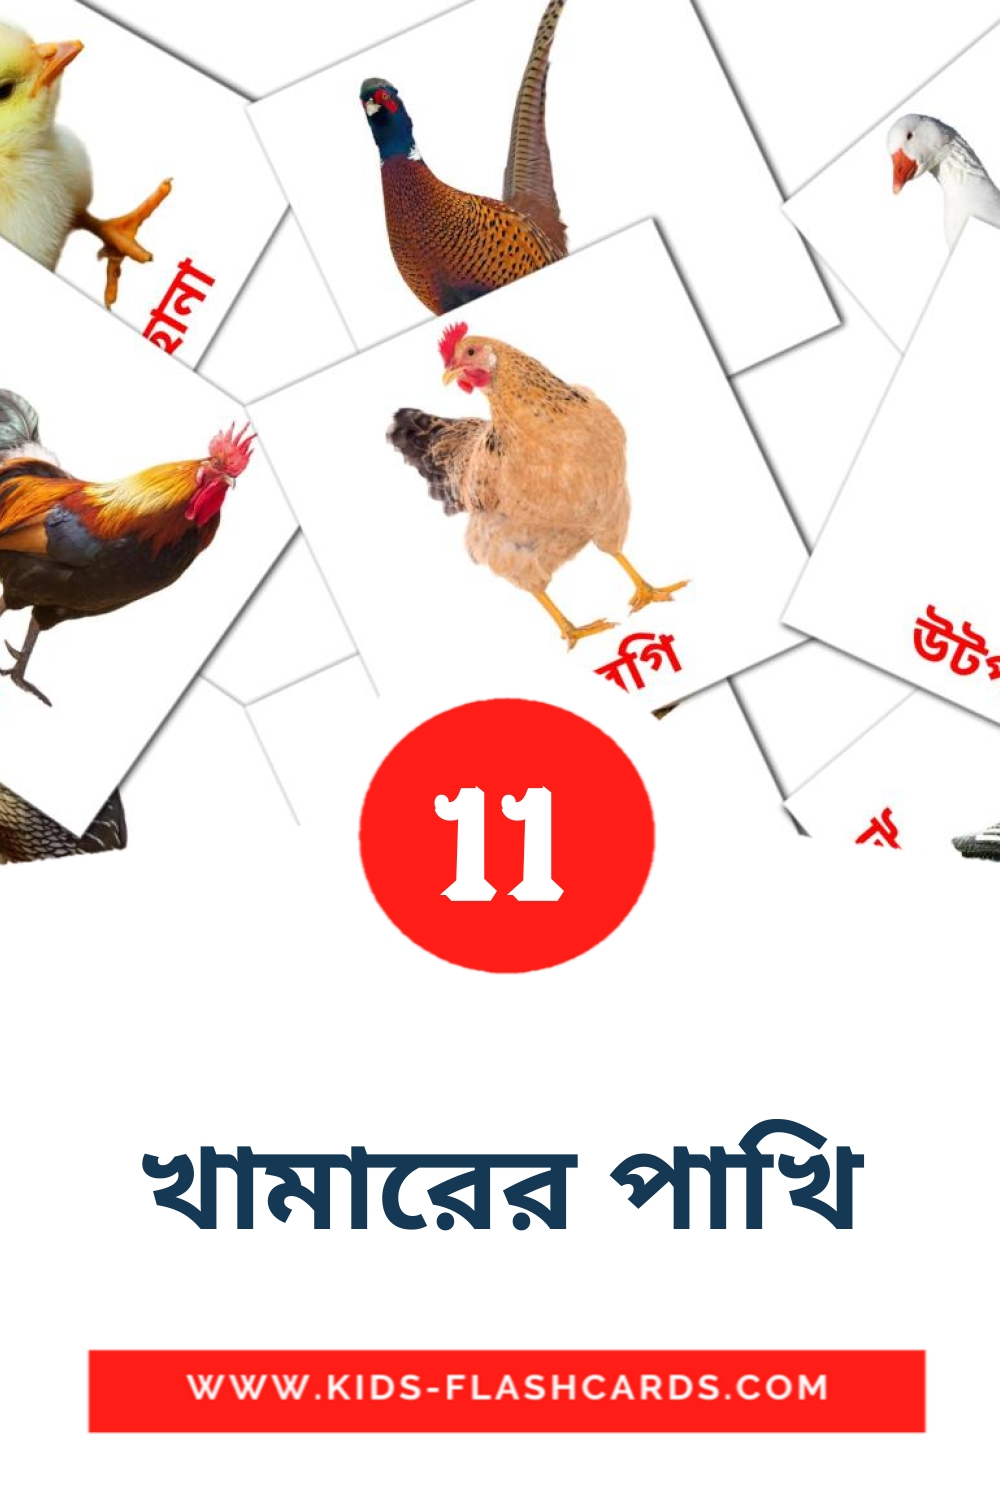 11 খামারের পাখি Picture Cards for Kindergarden in bengali